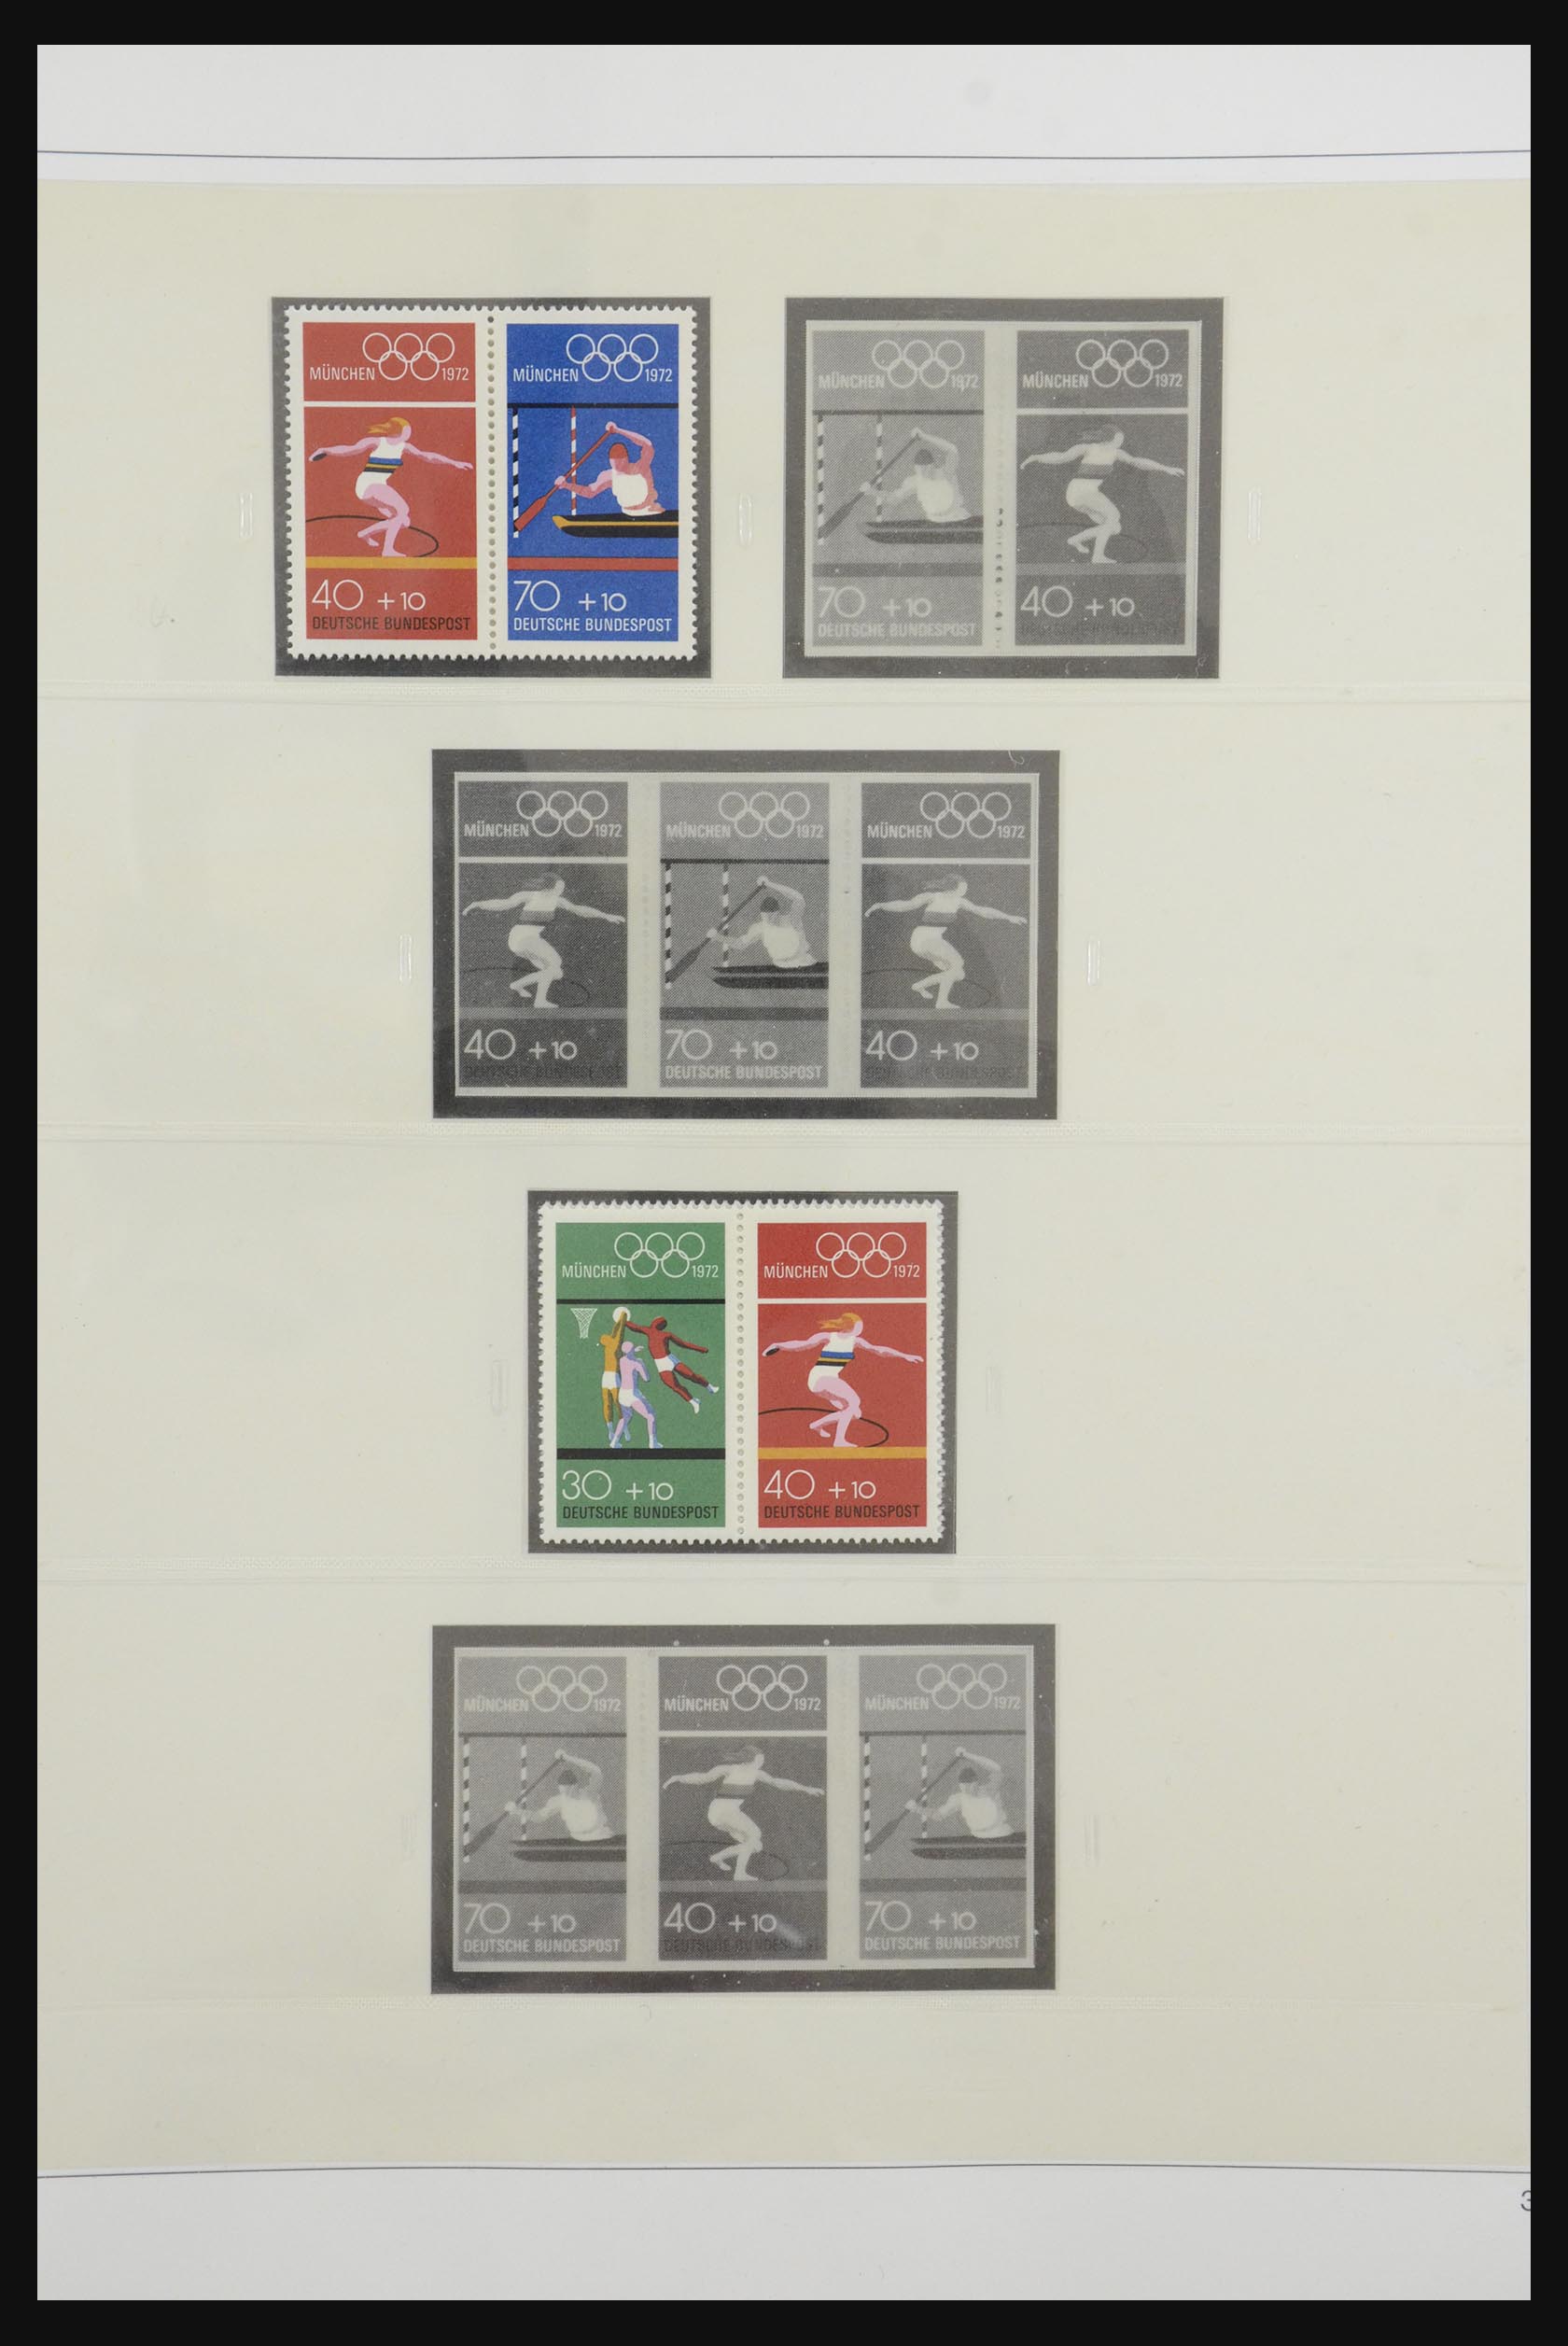 31842 043 - 31842 Bundespost combinaties 1951-2003.